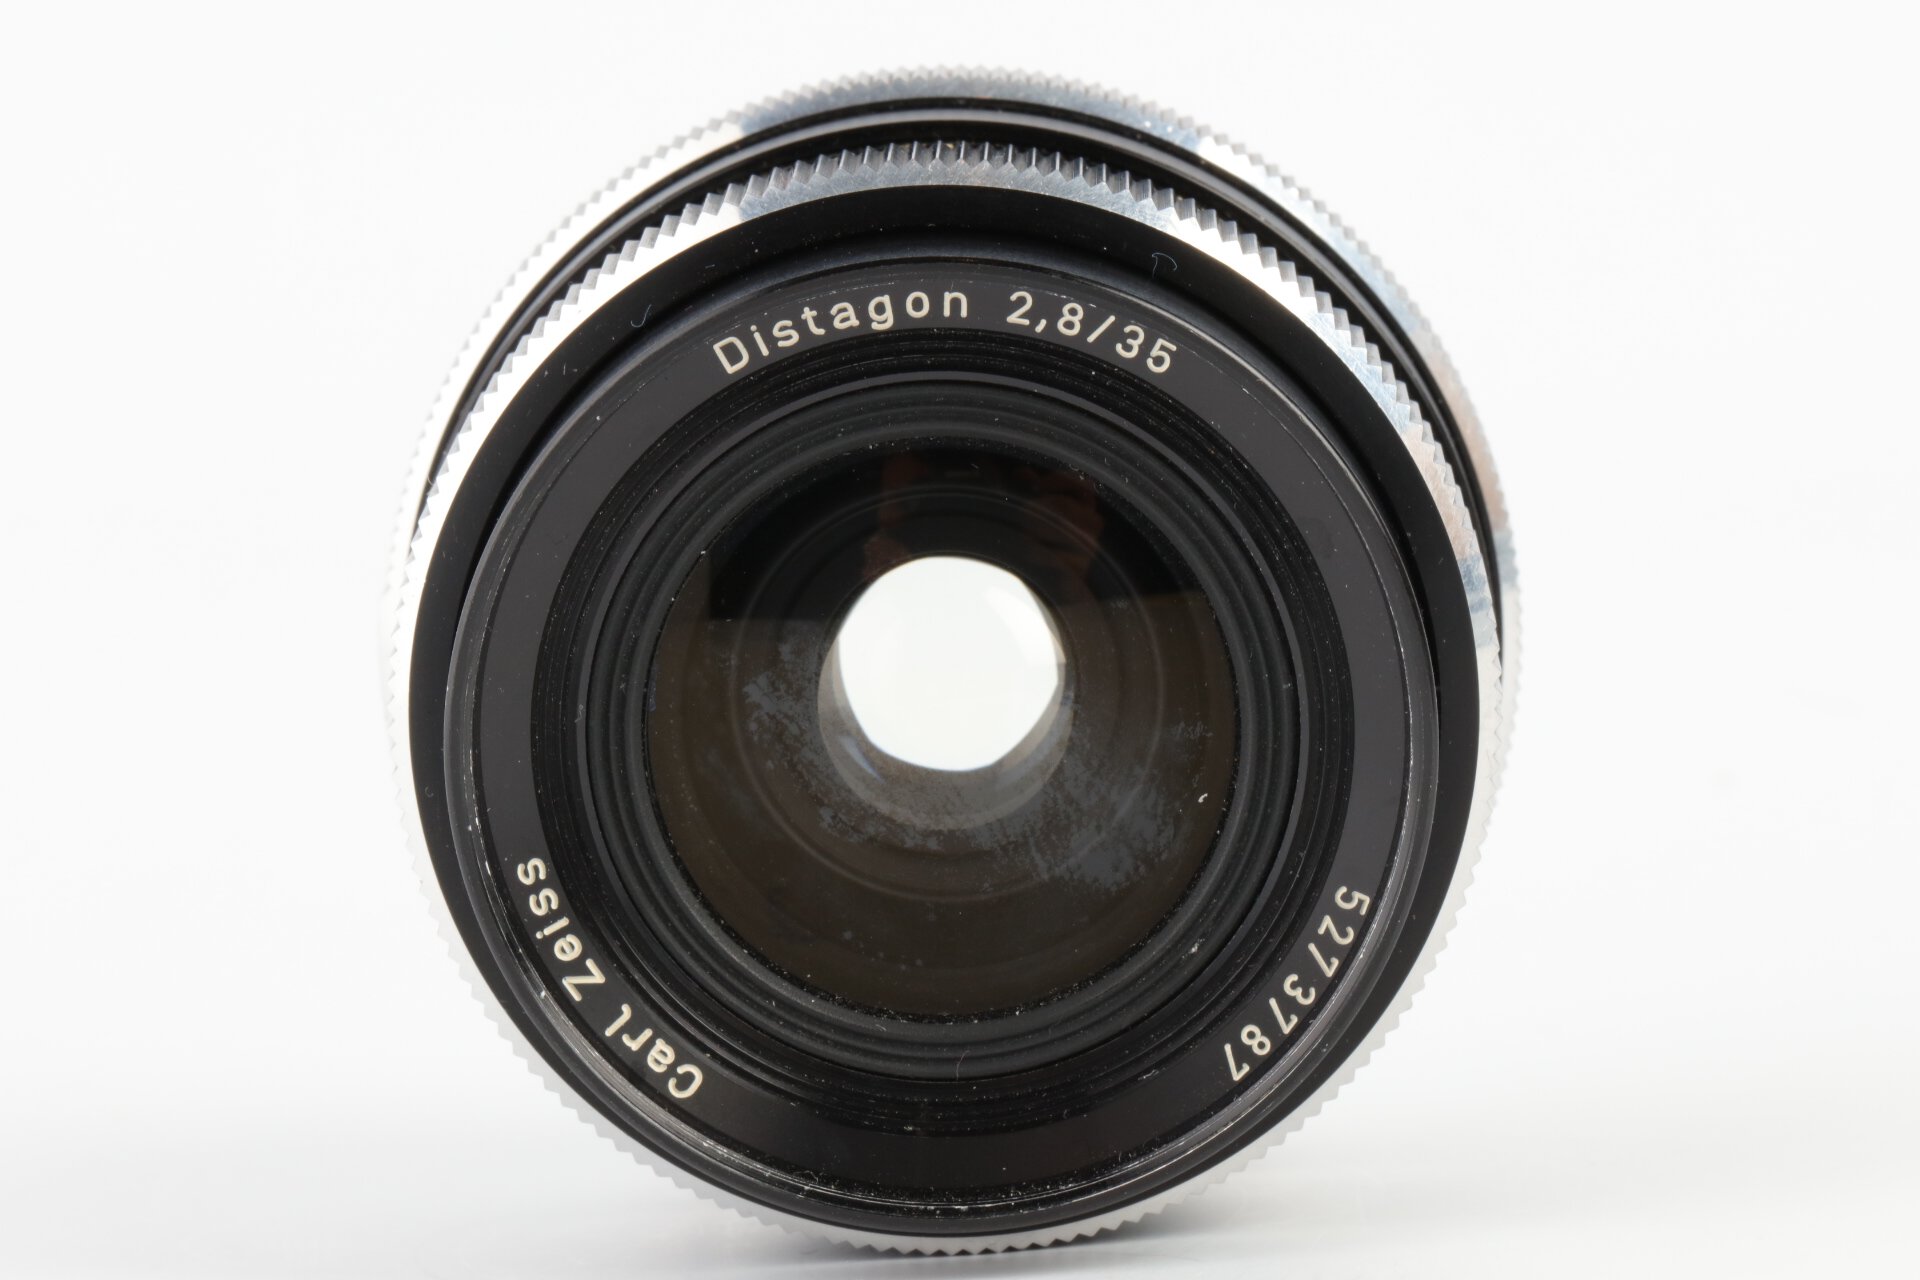 Rollei 2,8/35mm Distagon QBM